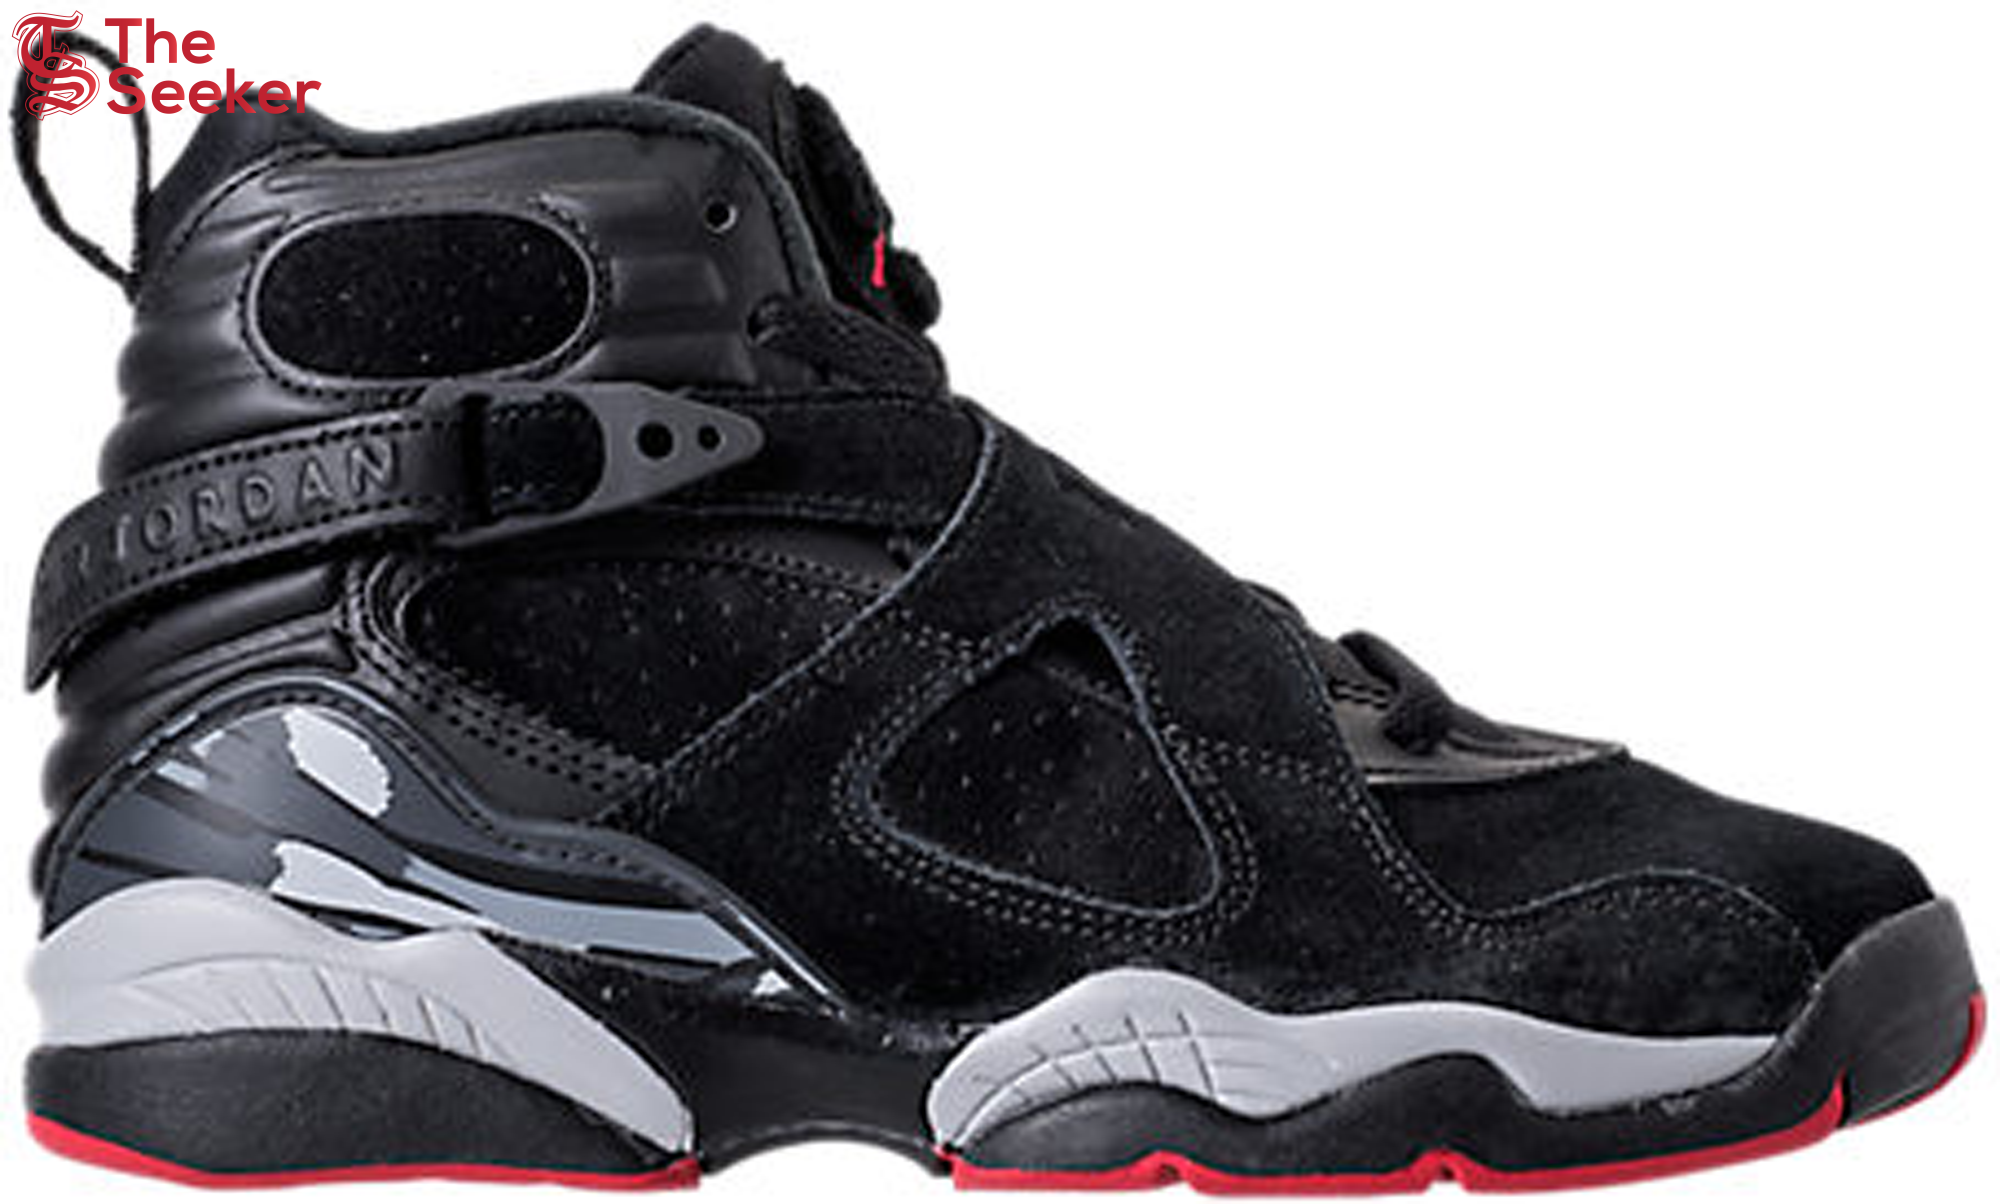 Jordan 8 Retro Black Cement (GS)